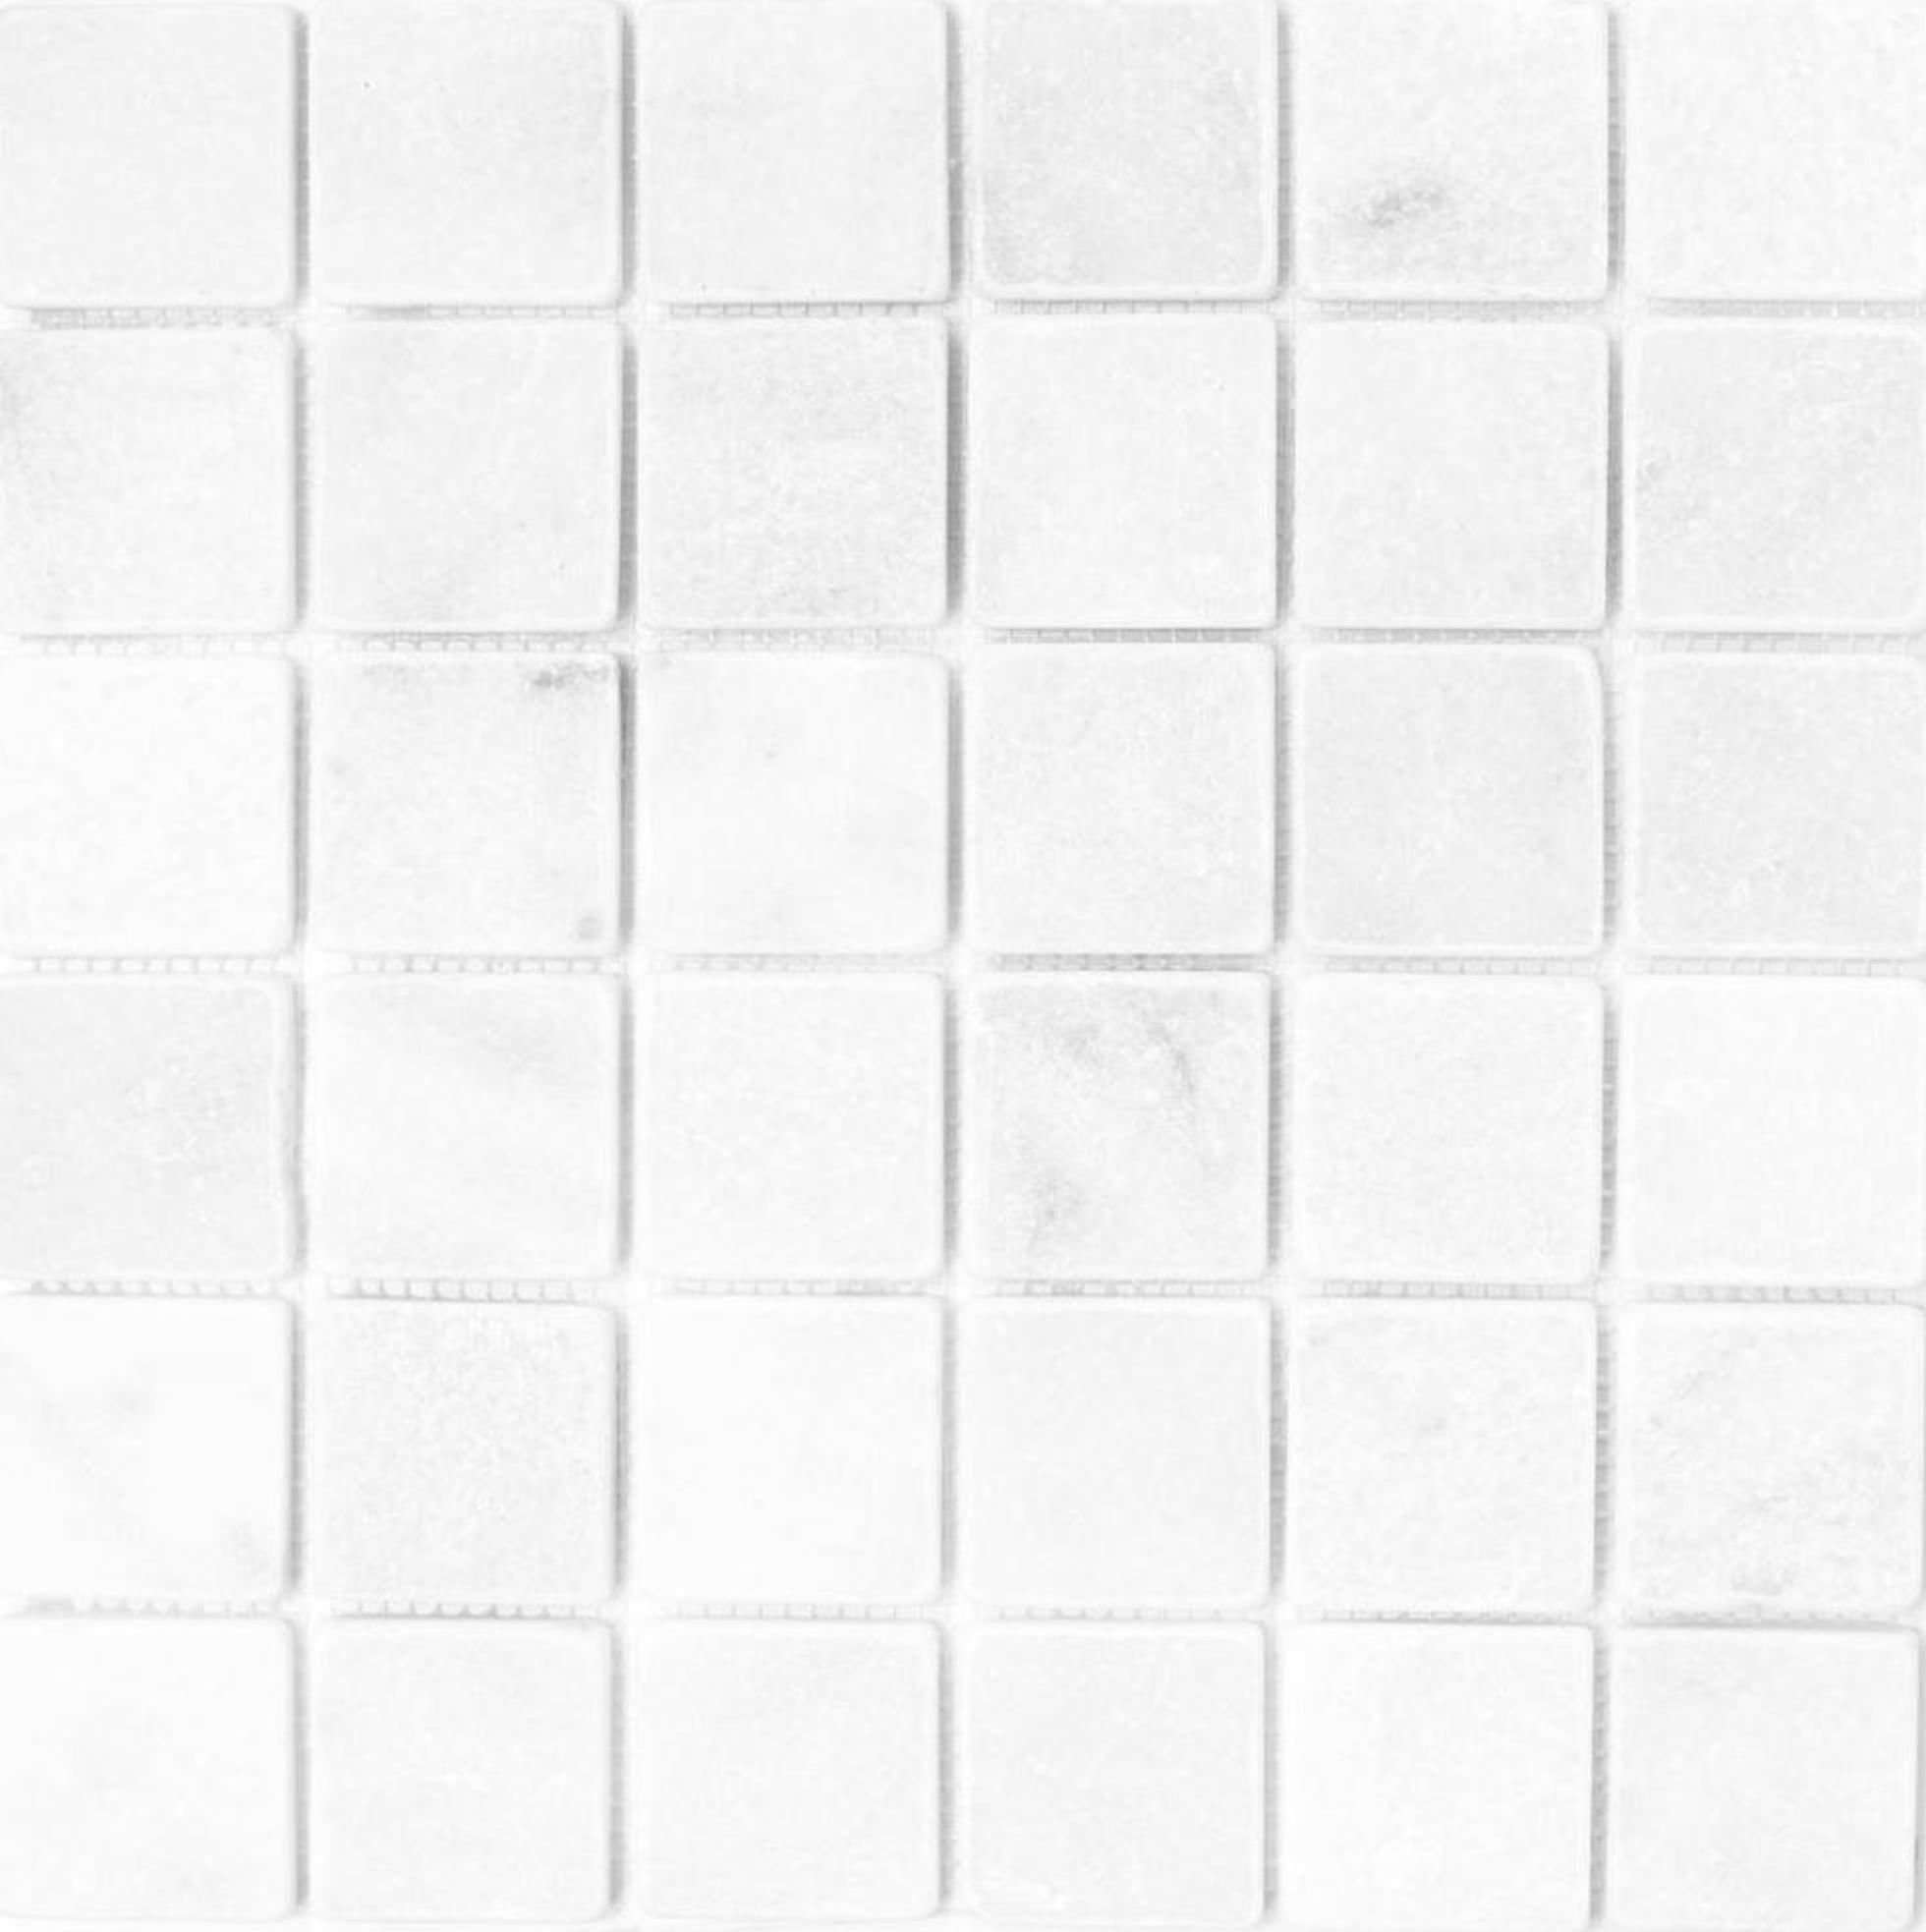 Mosani Bodenfliese Marmor Mosaik Fliese Naturstein Ibiza weiß hellgrau cream Dusche Wand